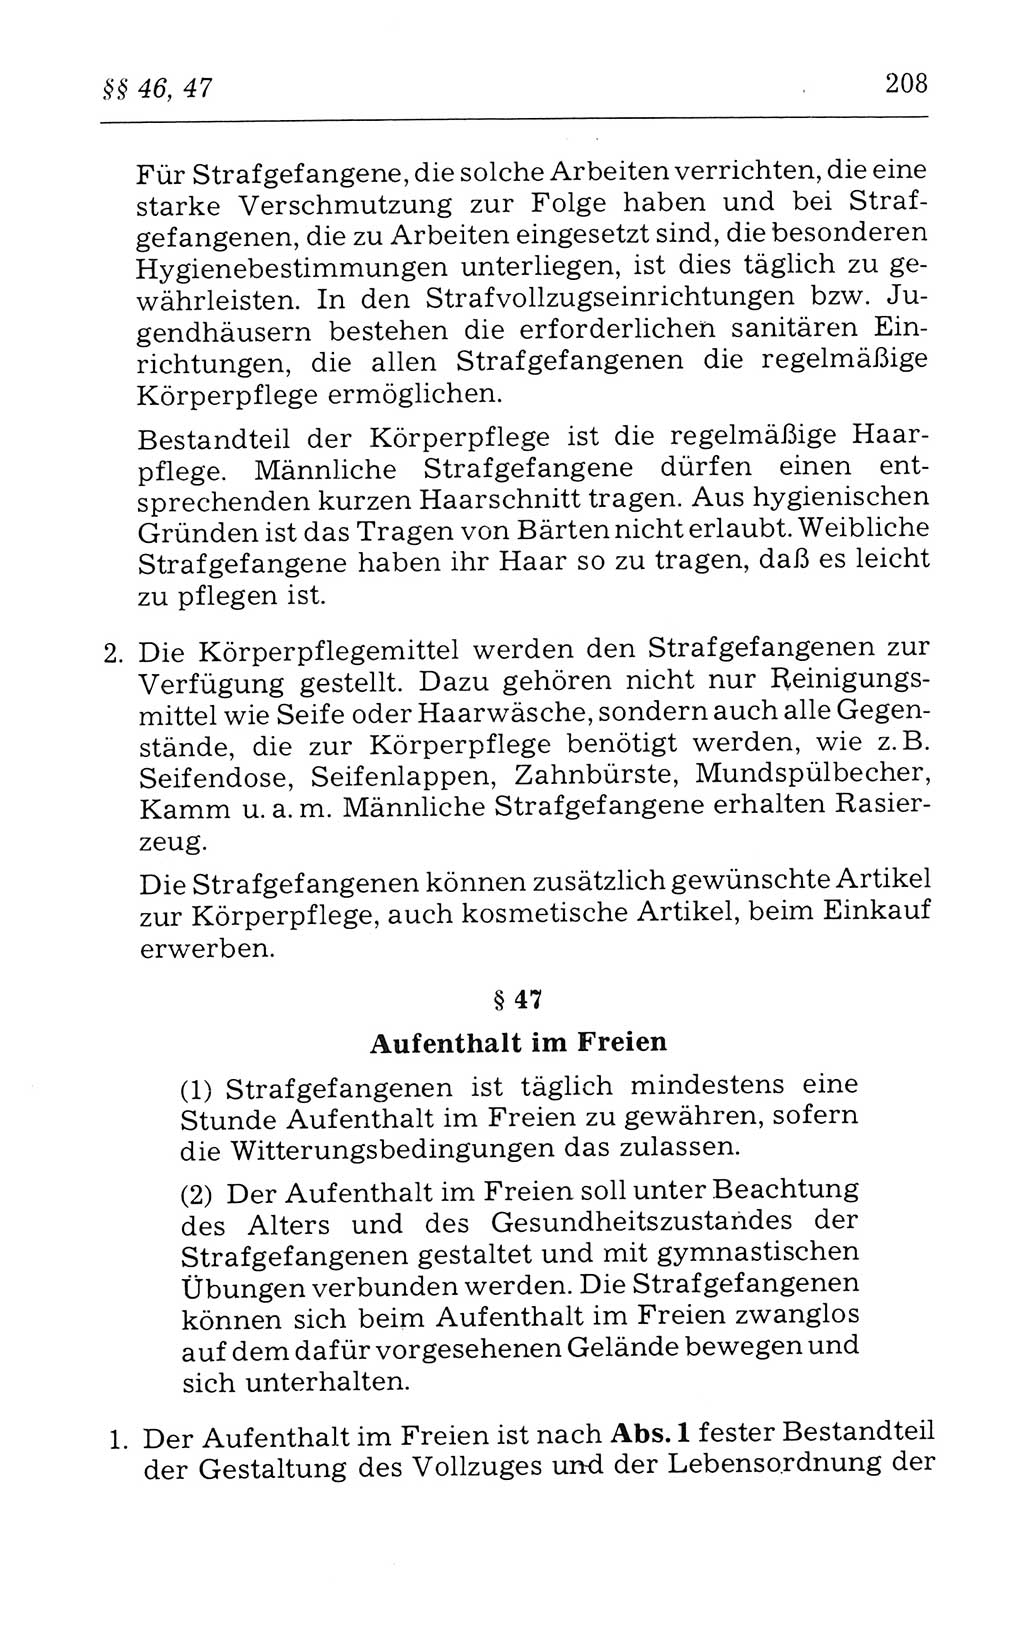 Kommentar zum Strafvollzugsgesetz [(StVG) Deutsche Demokratische Republik (DDR)] 1980, Seite 208 (Komm. StVG DDR 1980, S. 208)